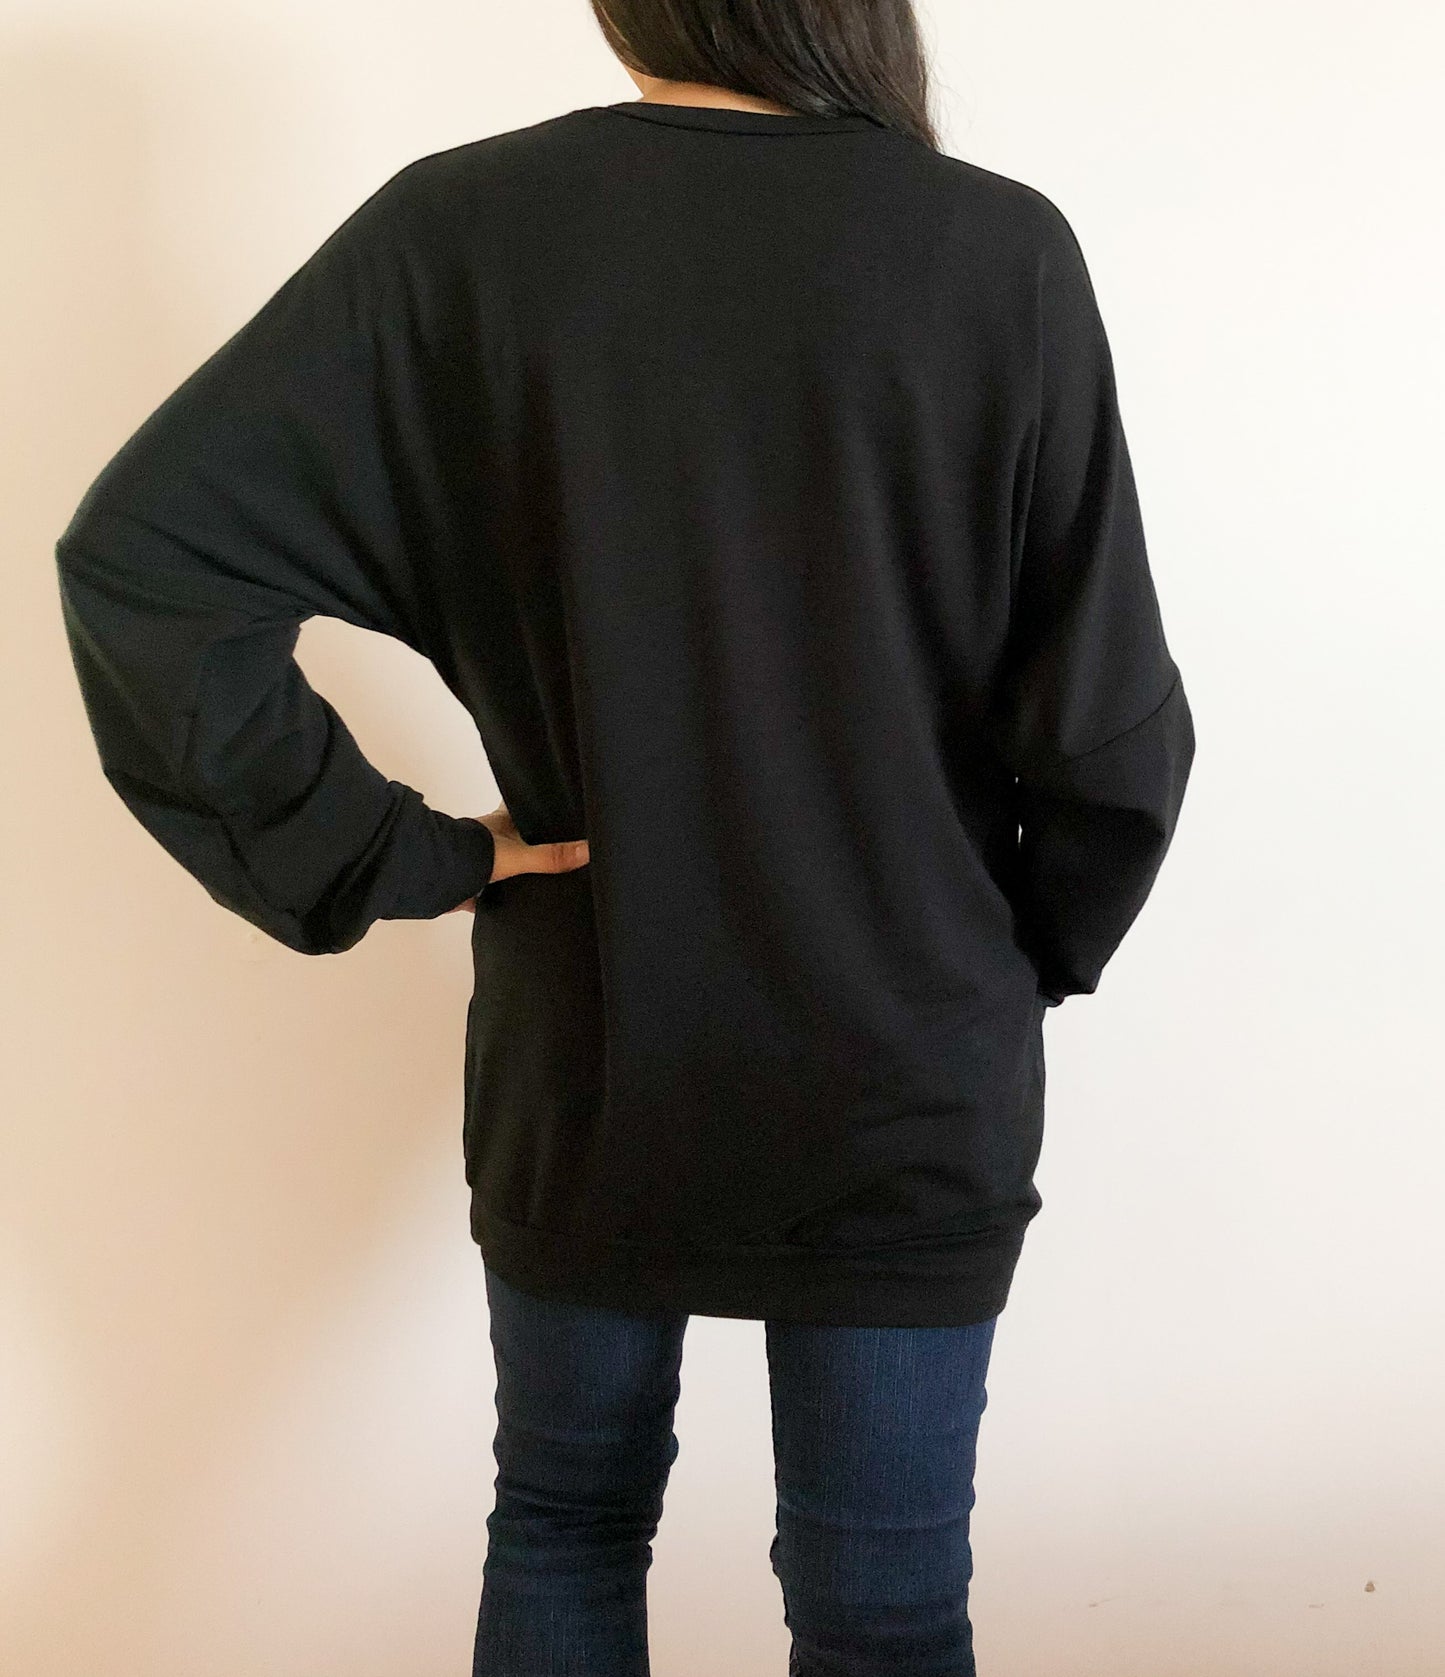 Boyfriend Sweater in Black